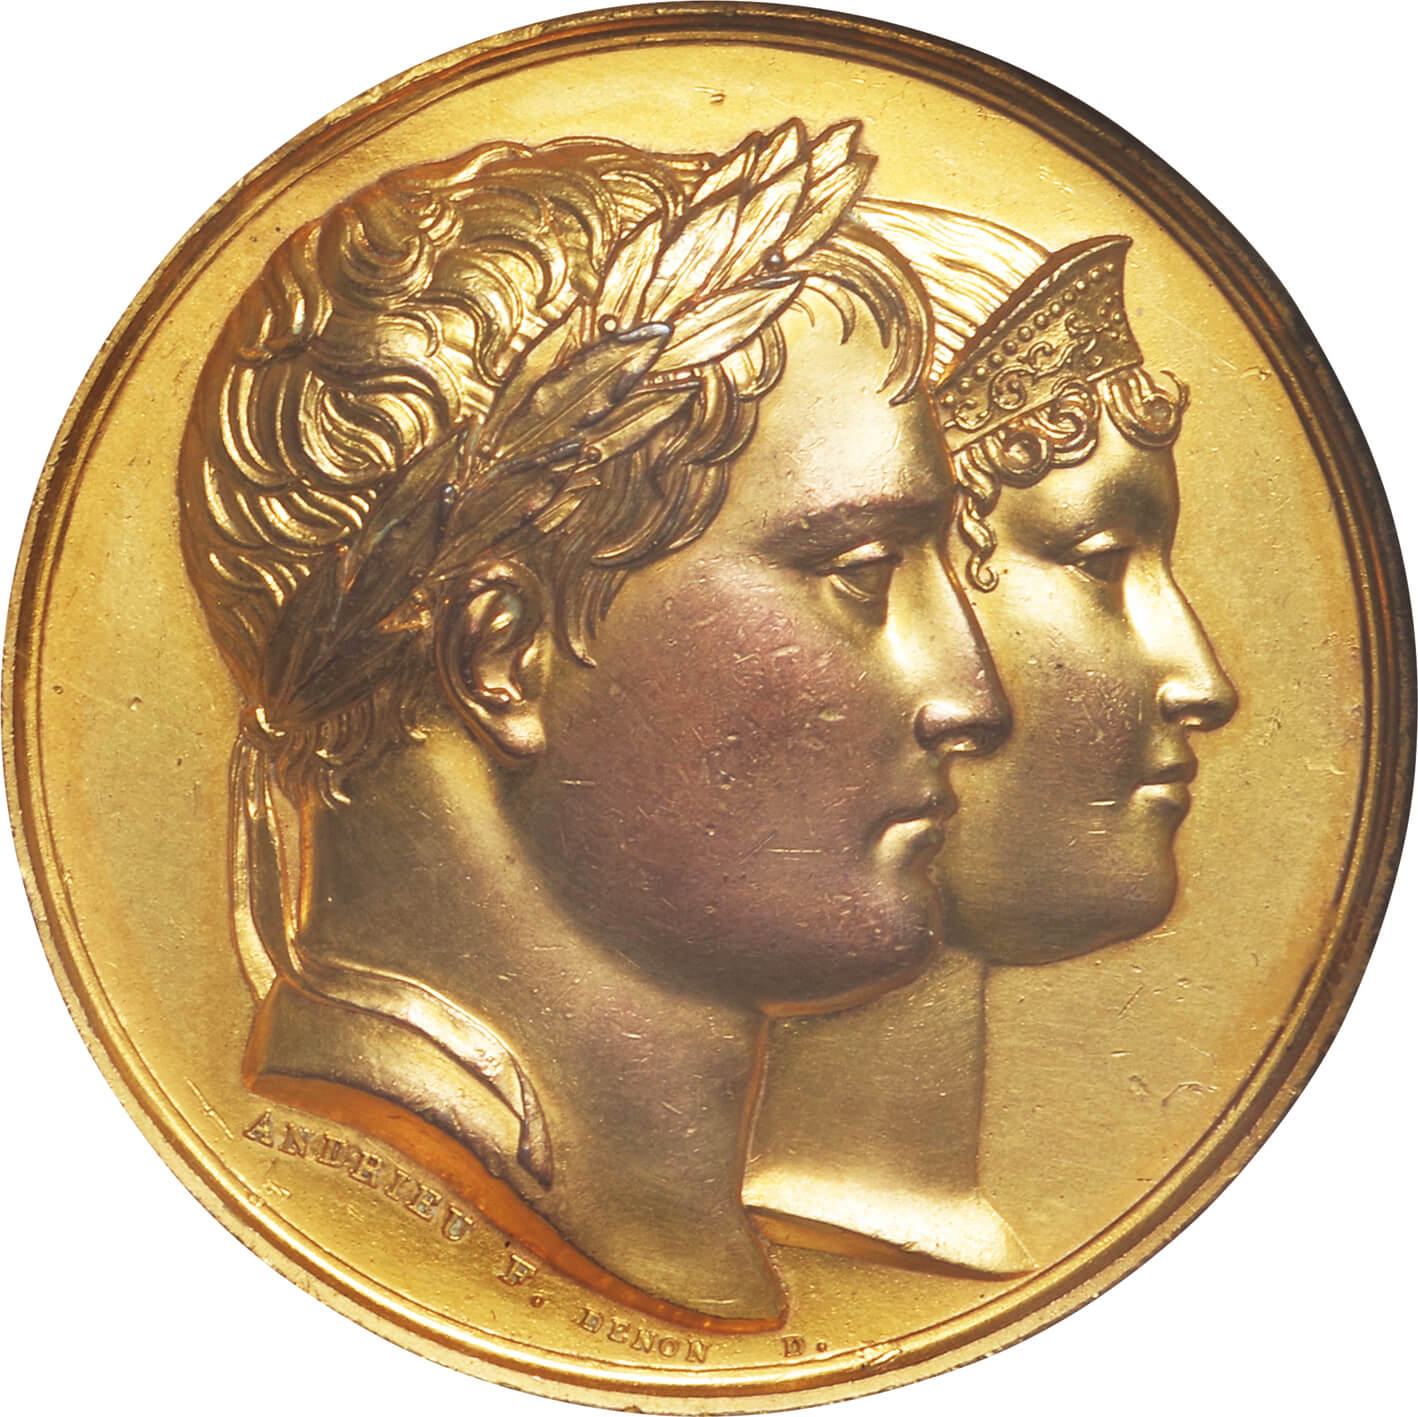 超特価激安フランス 1880 マリアンヌ アールヌーボー 50mm 大型 受賞 銀メダル コレクション